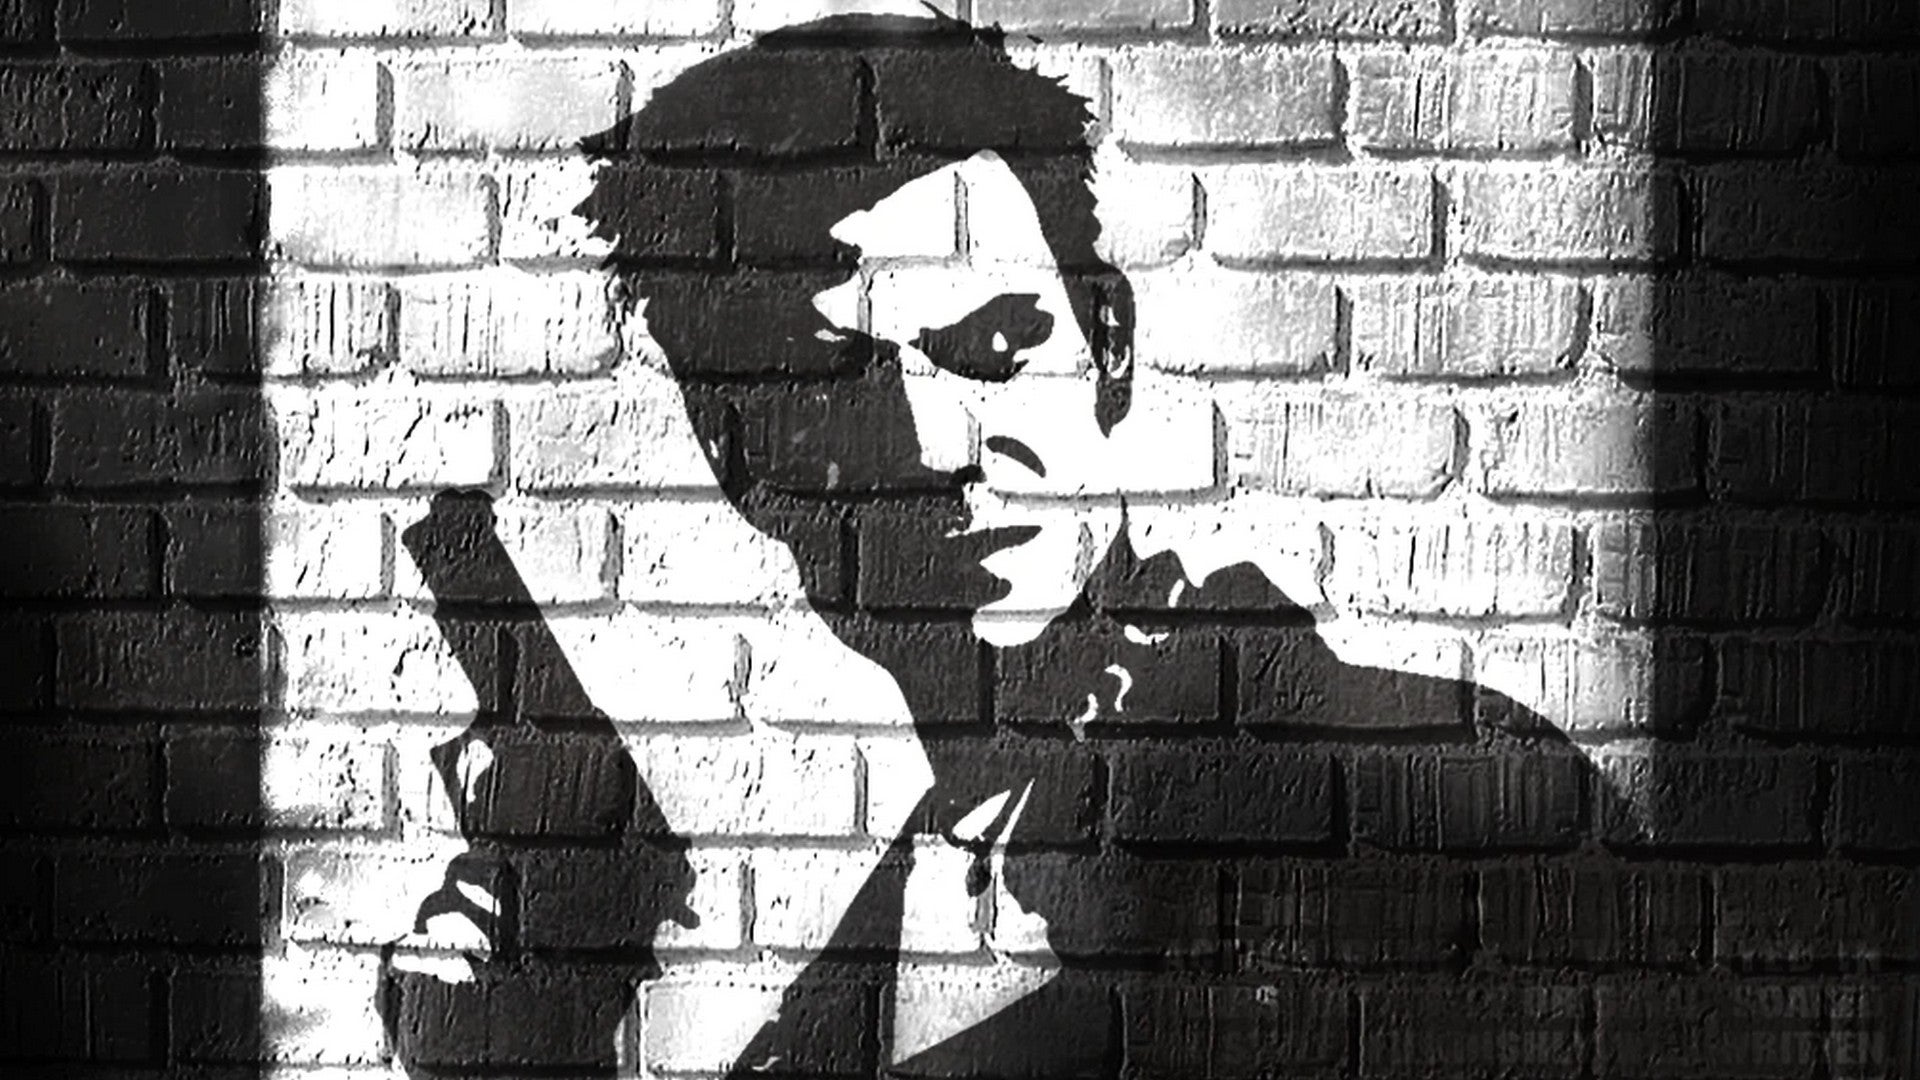 Bilder zu Max Payne 1 und 2: Remedy kündigt Remakes der beiden Klassiker an